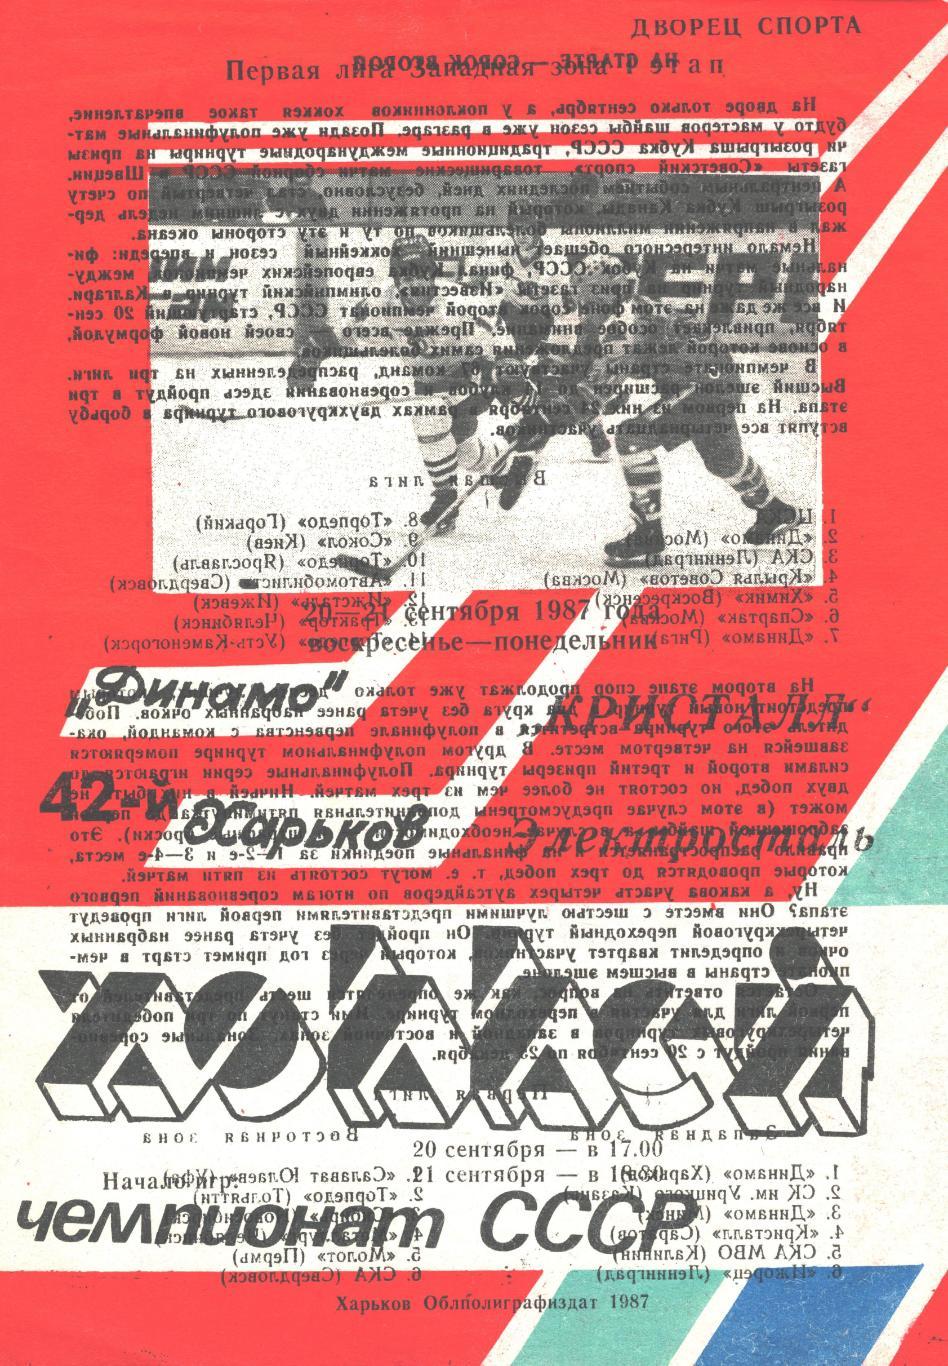 ДИНАМО (Харьков) - КРИСТАЛЛ (Электросталь), 20-21 сентября 1987 года